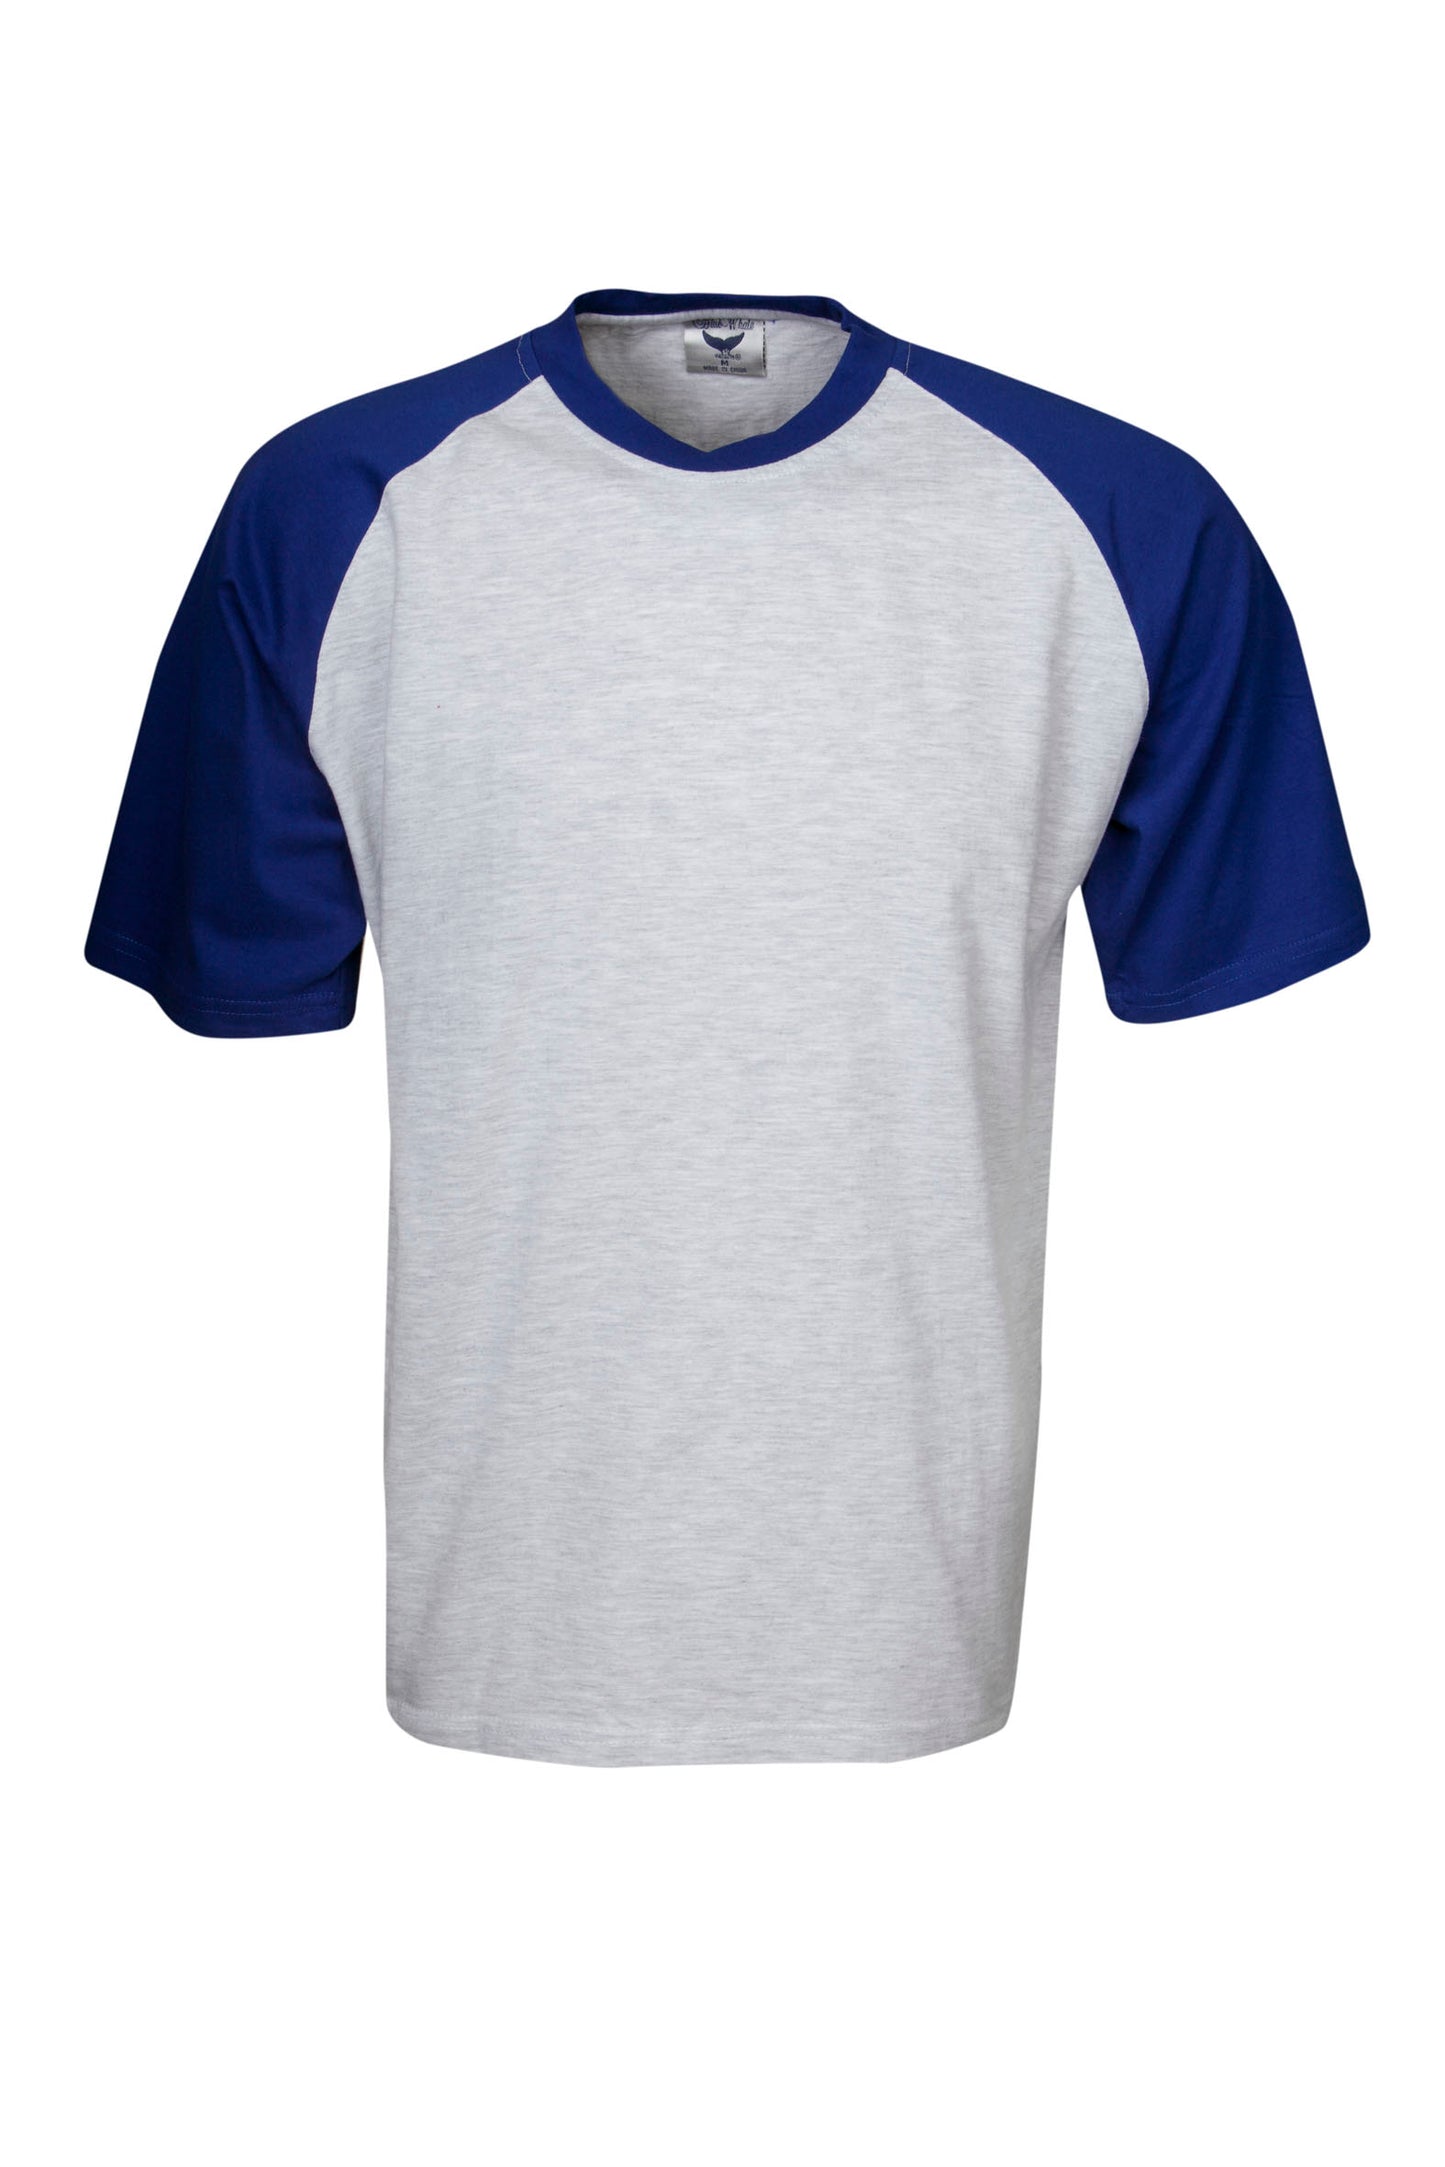 Blue Whale 2-Tone Raglan Sleeve T-shirt